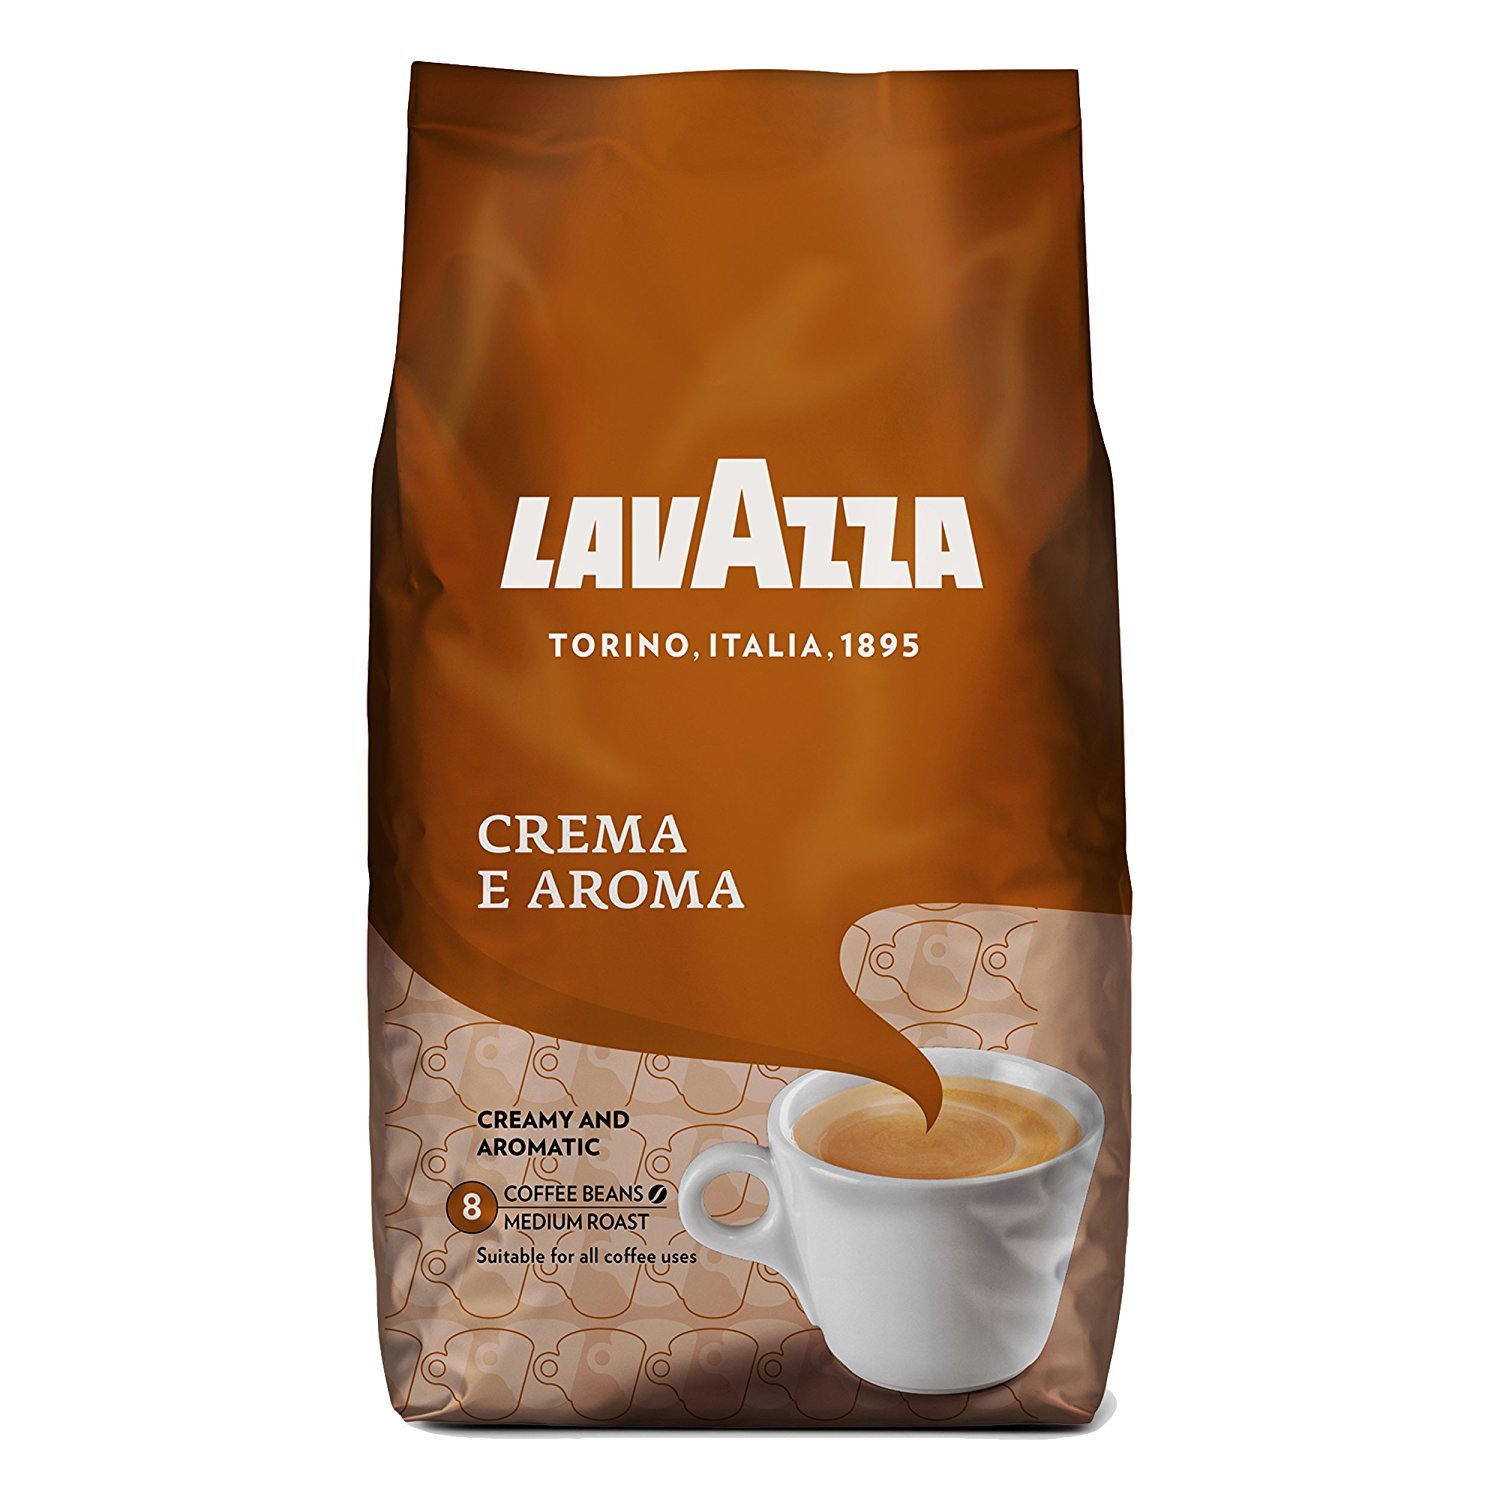 قهوه دان لاواتزا مدل crema aroma مقدار 1 کیلوگرم